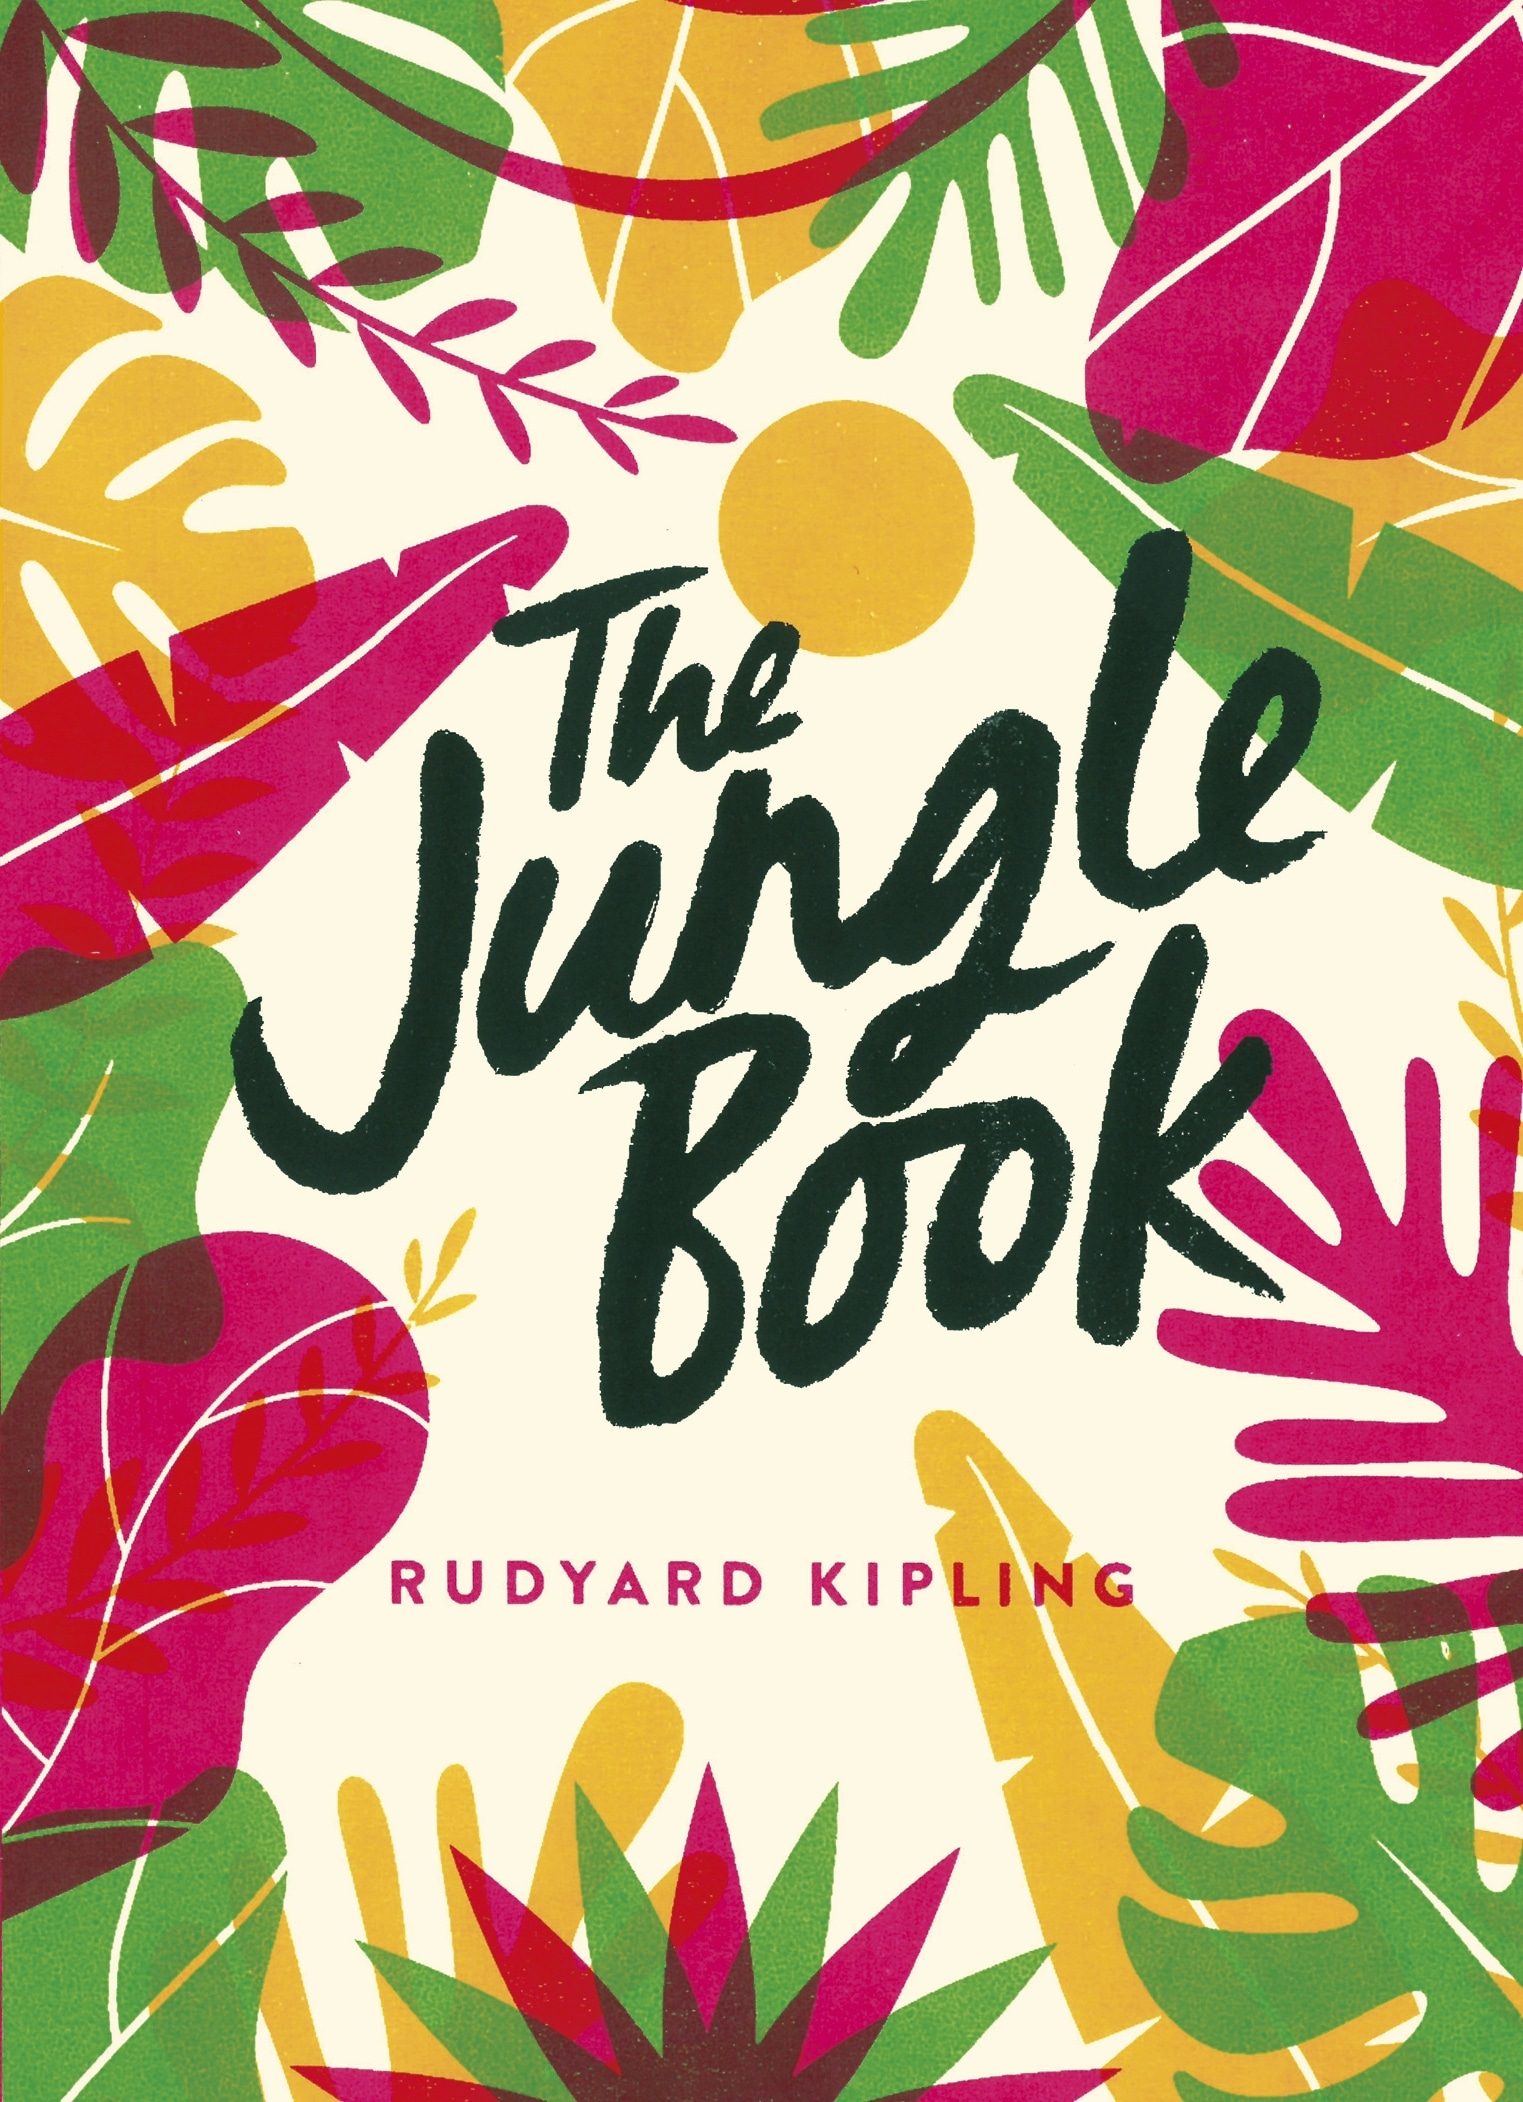 Book “The Jungle Book” by Rudyard Kipling — April 16, 2020